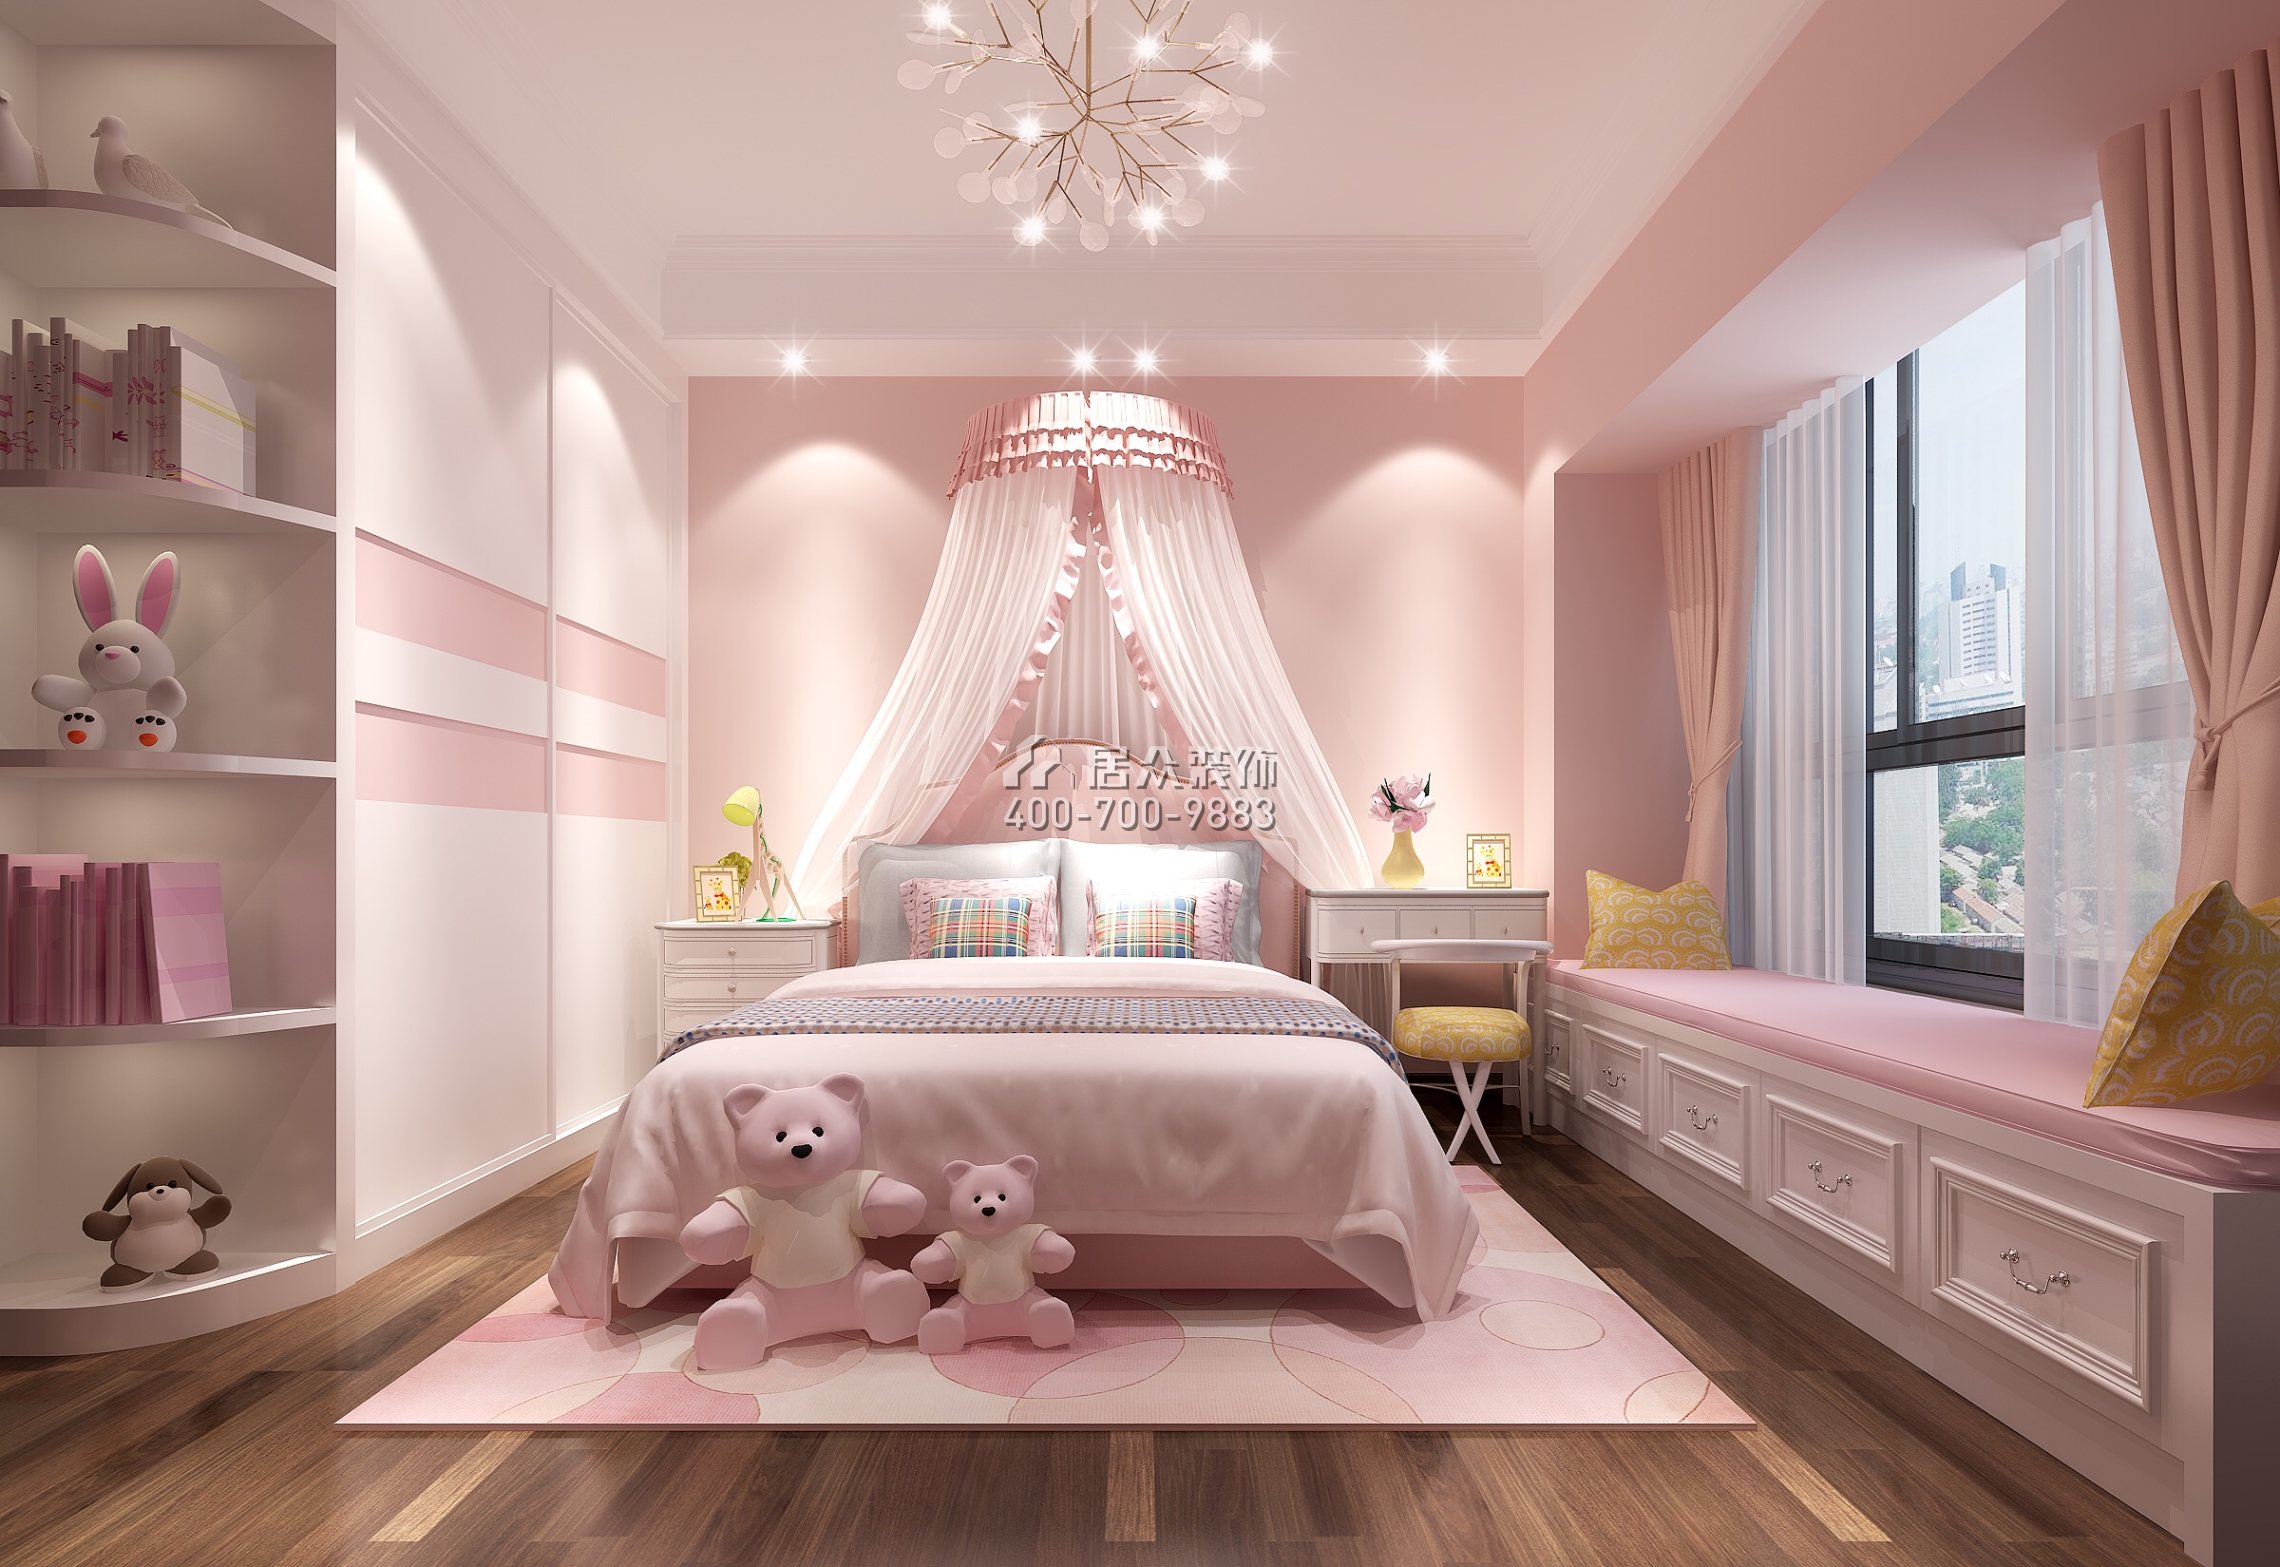 星河丹堤180平方米欧式风格平层户型卧室装修效果图